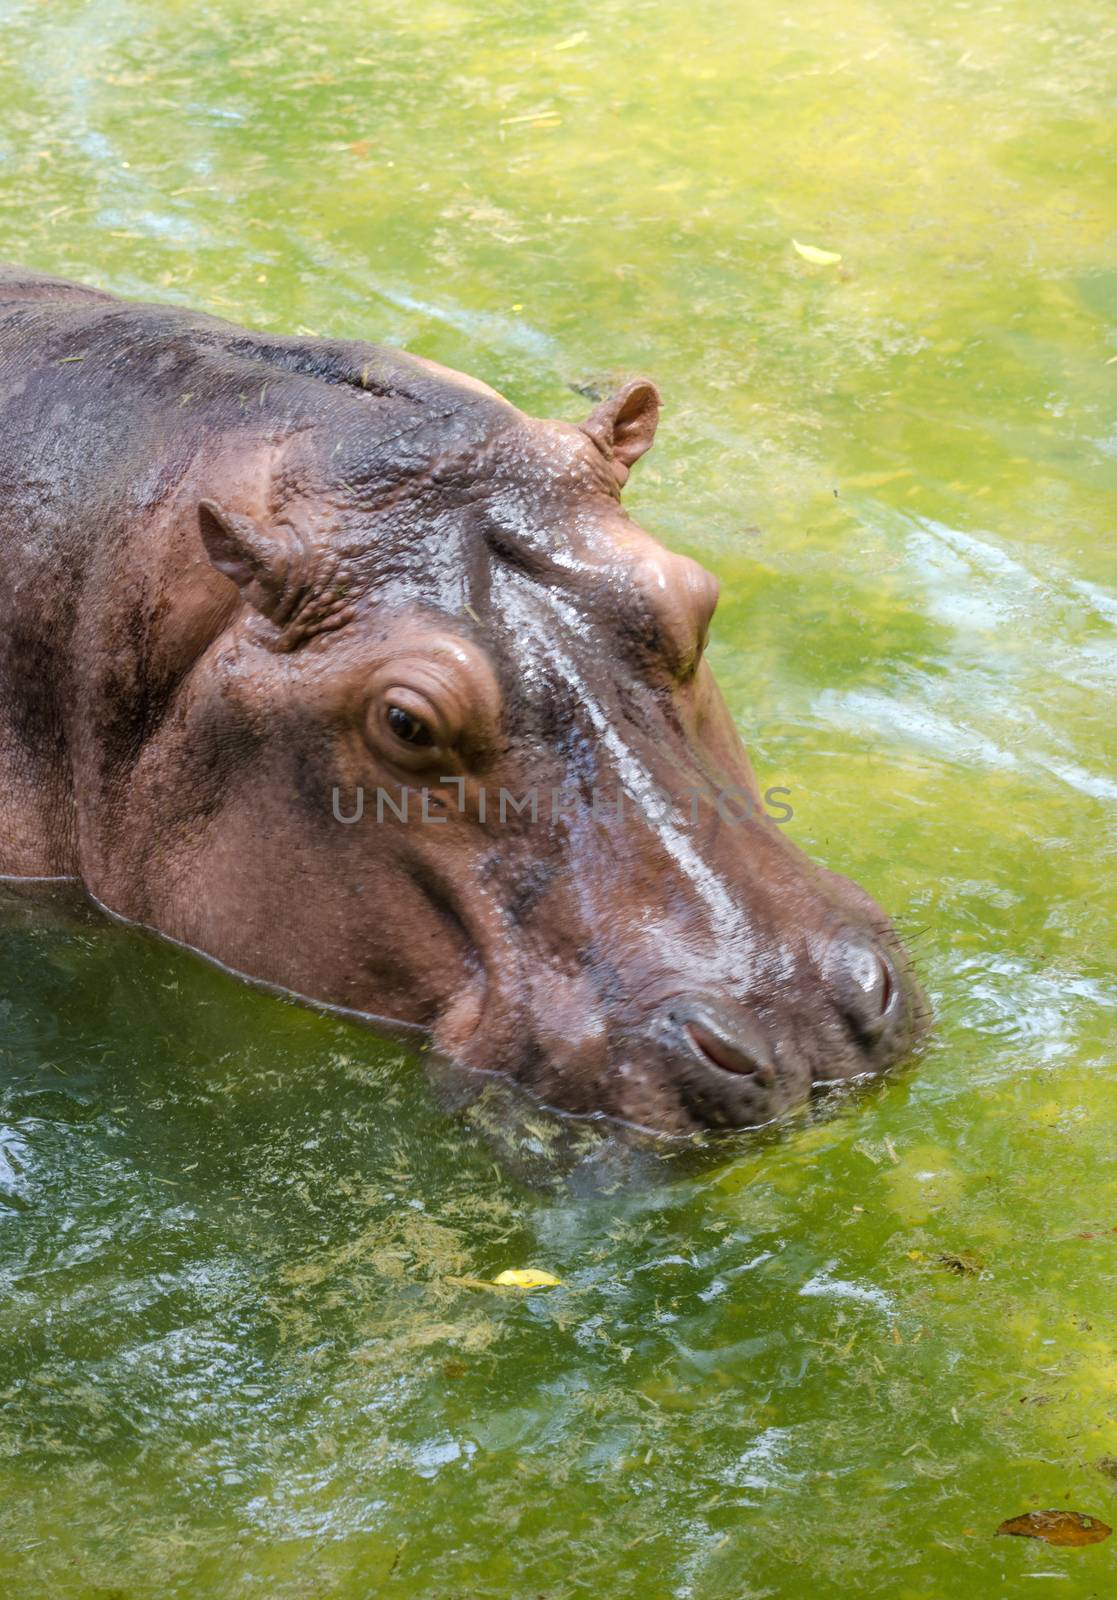 Wild hippopotamus by siraanamwong